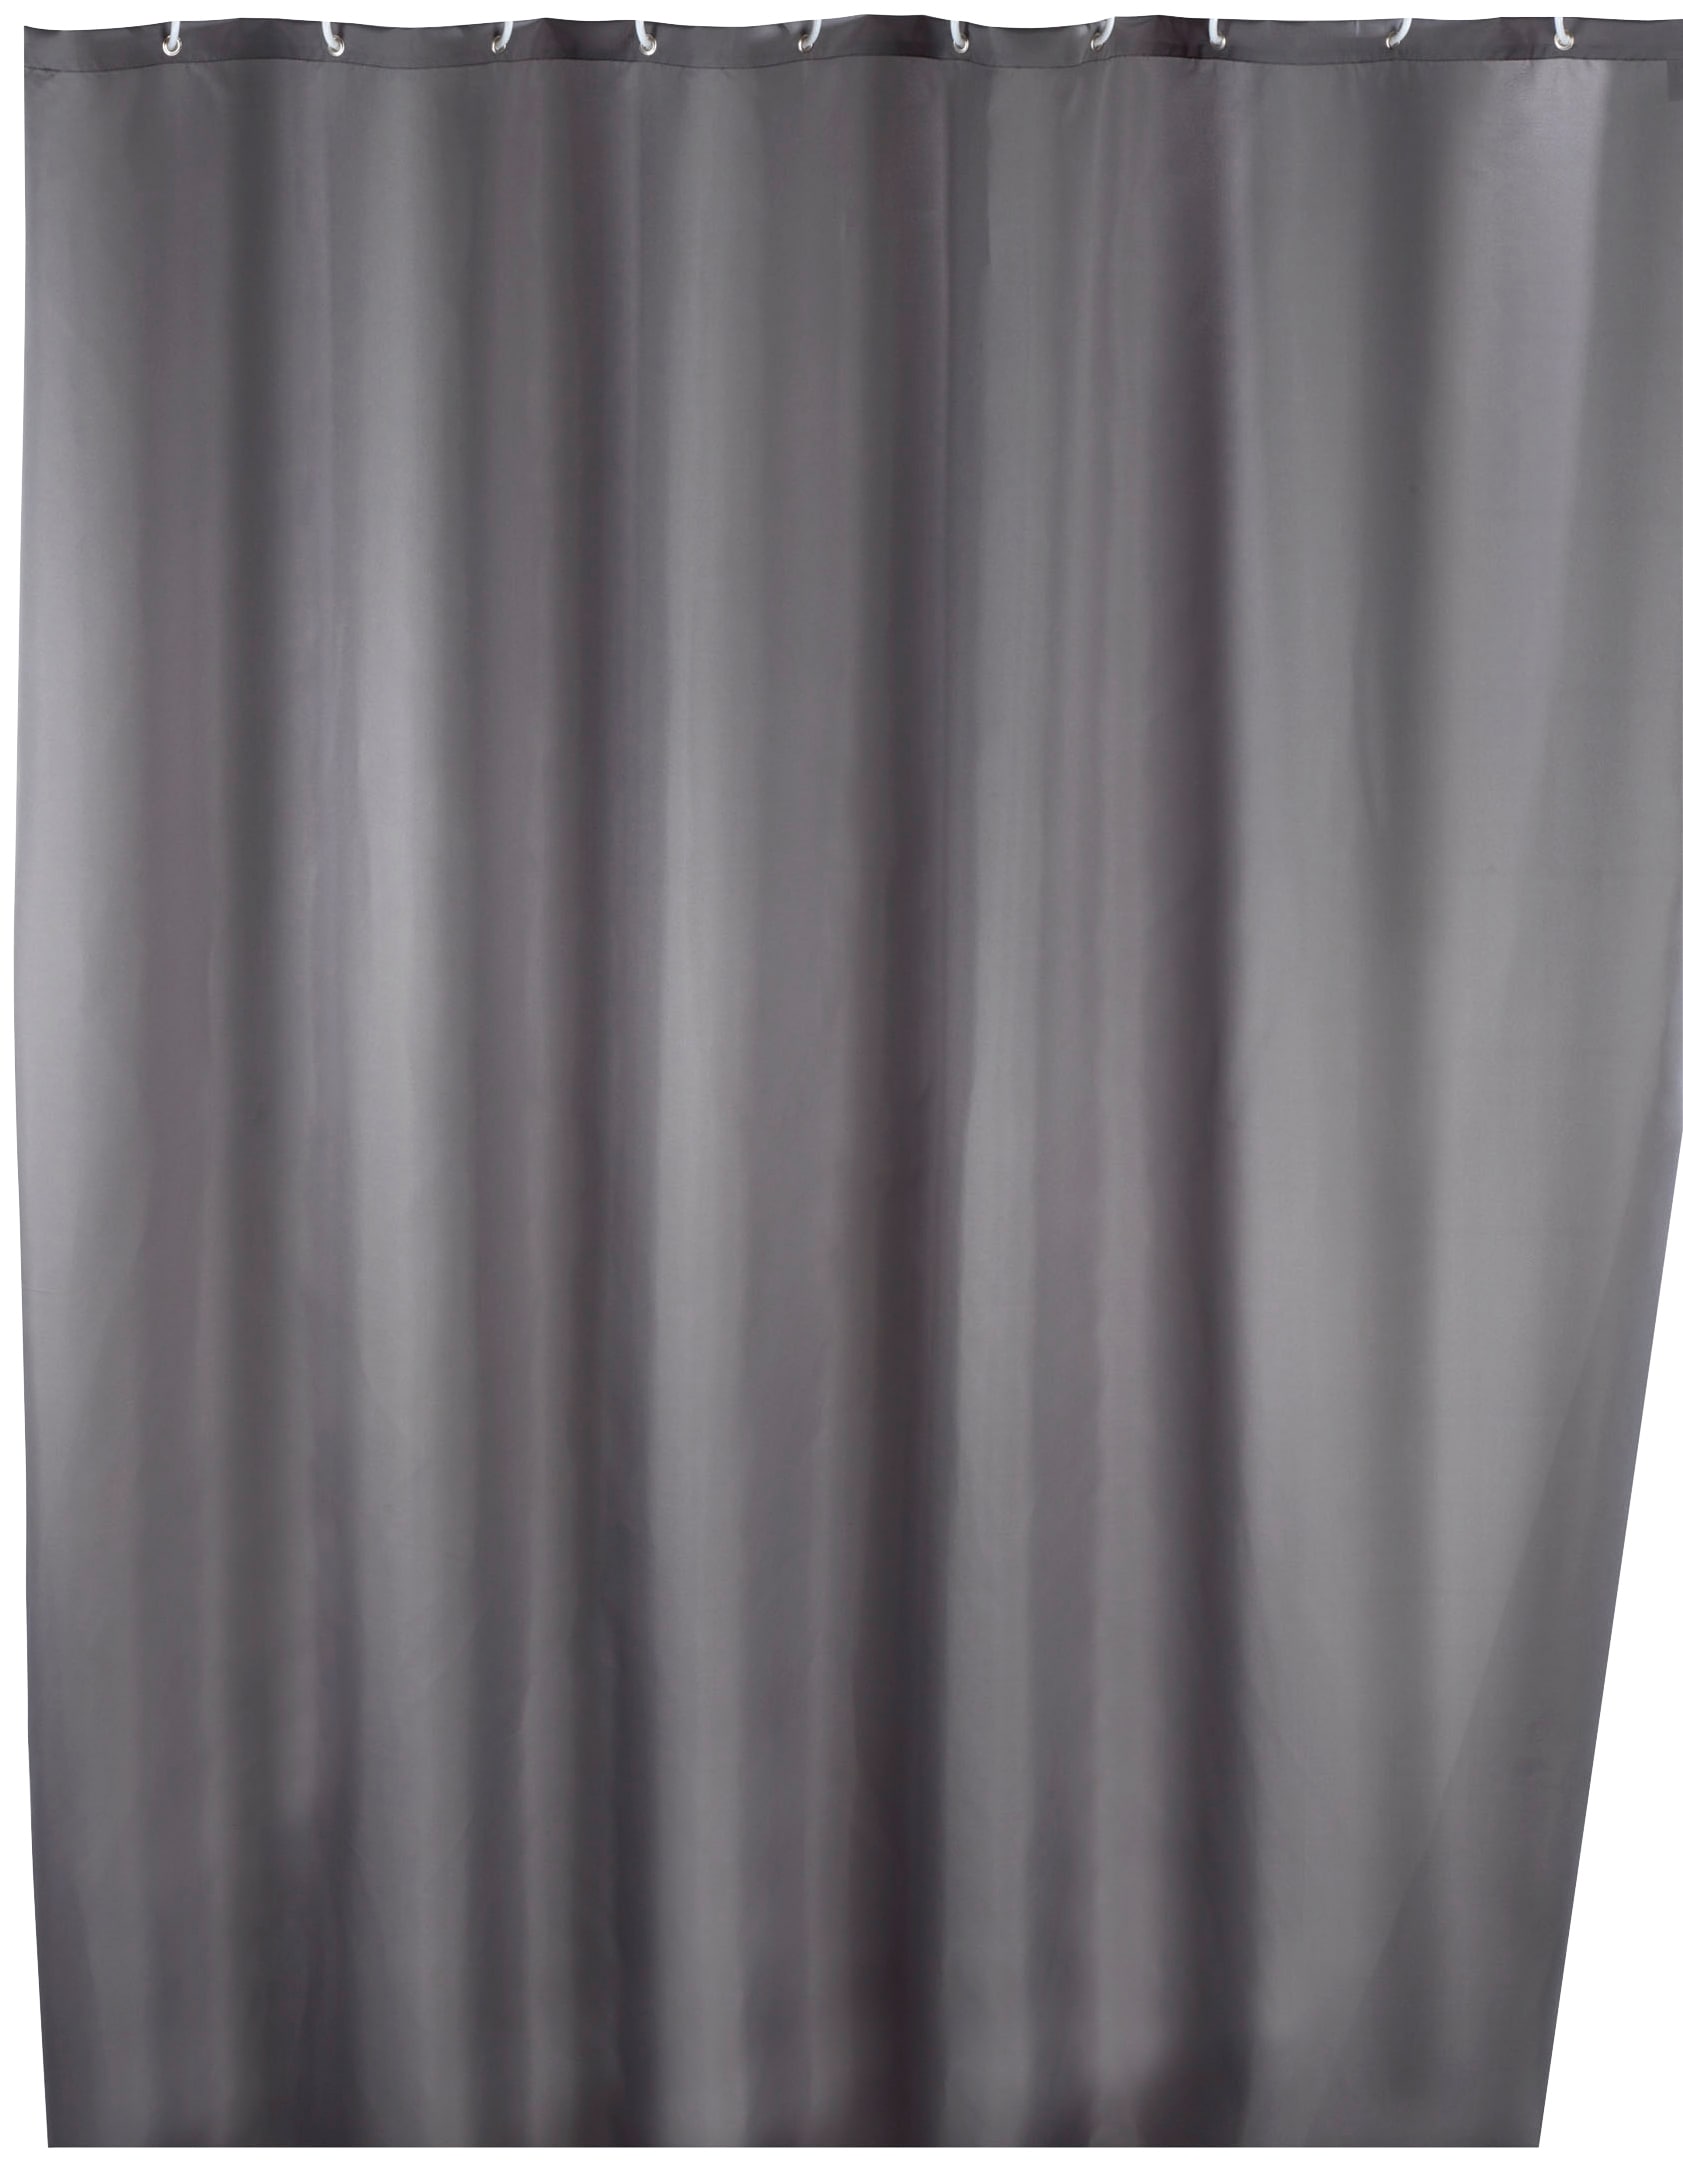 WENKO Duschvorhang "Uni Grey", Höhe 200 cm, waschbar